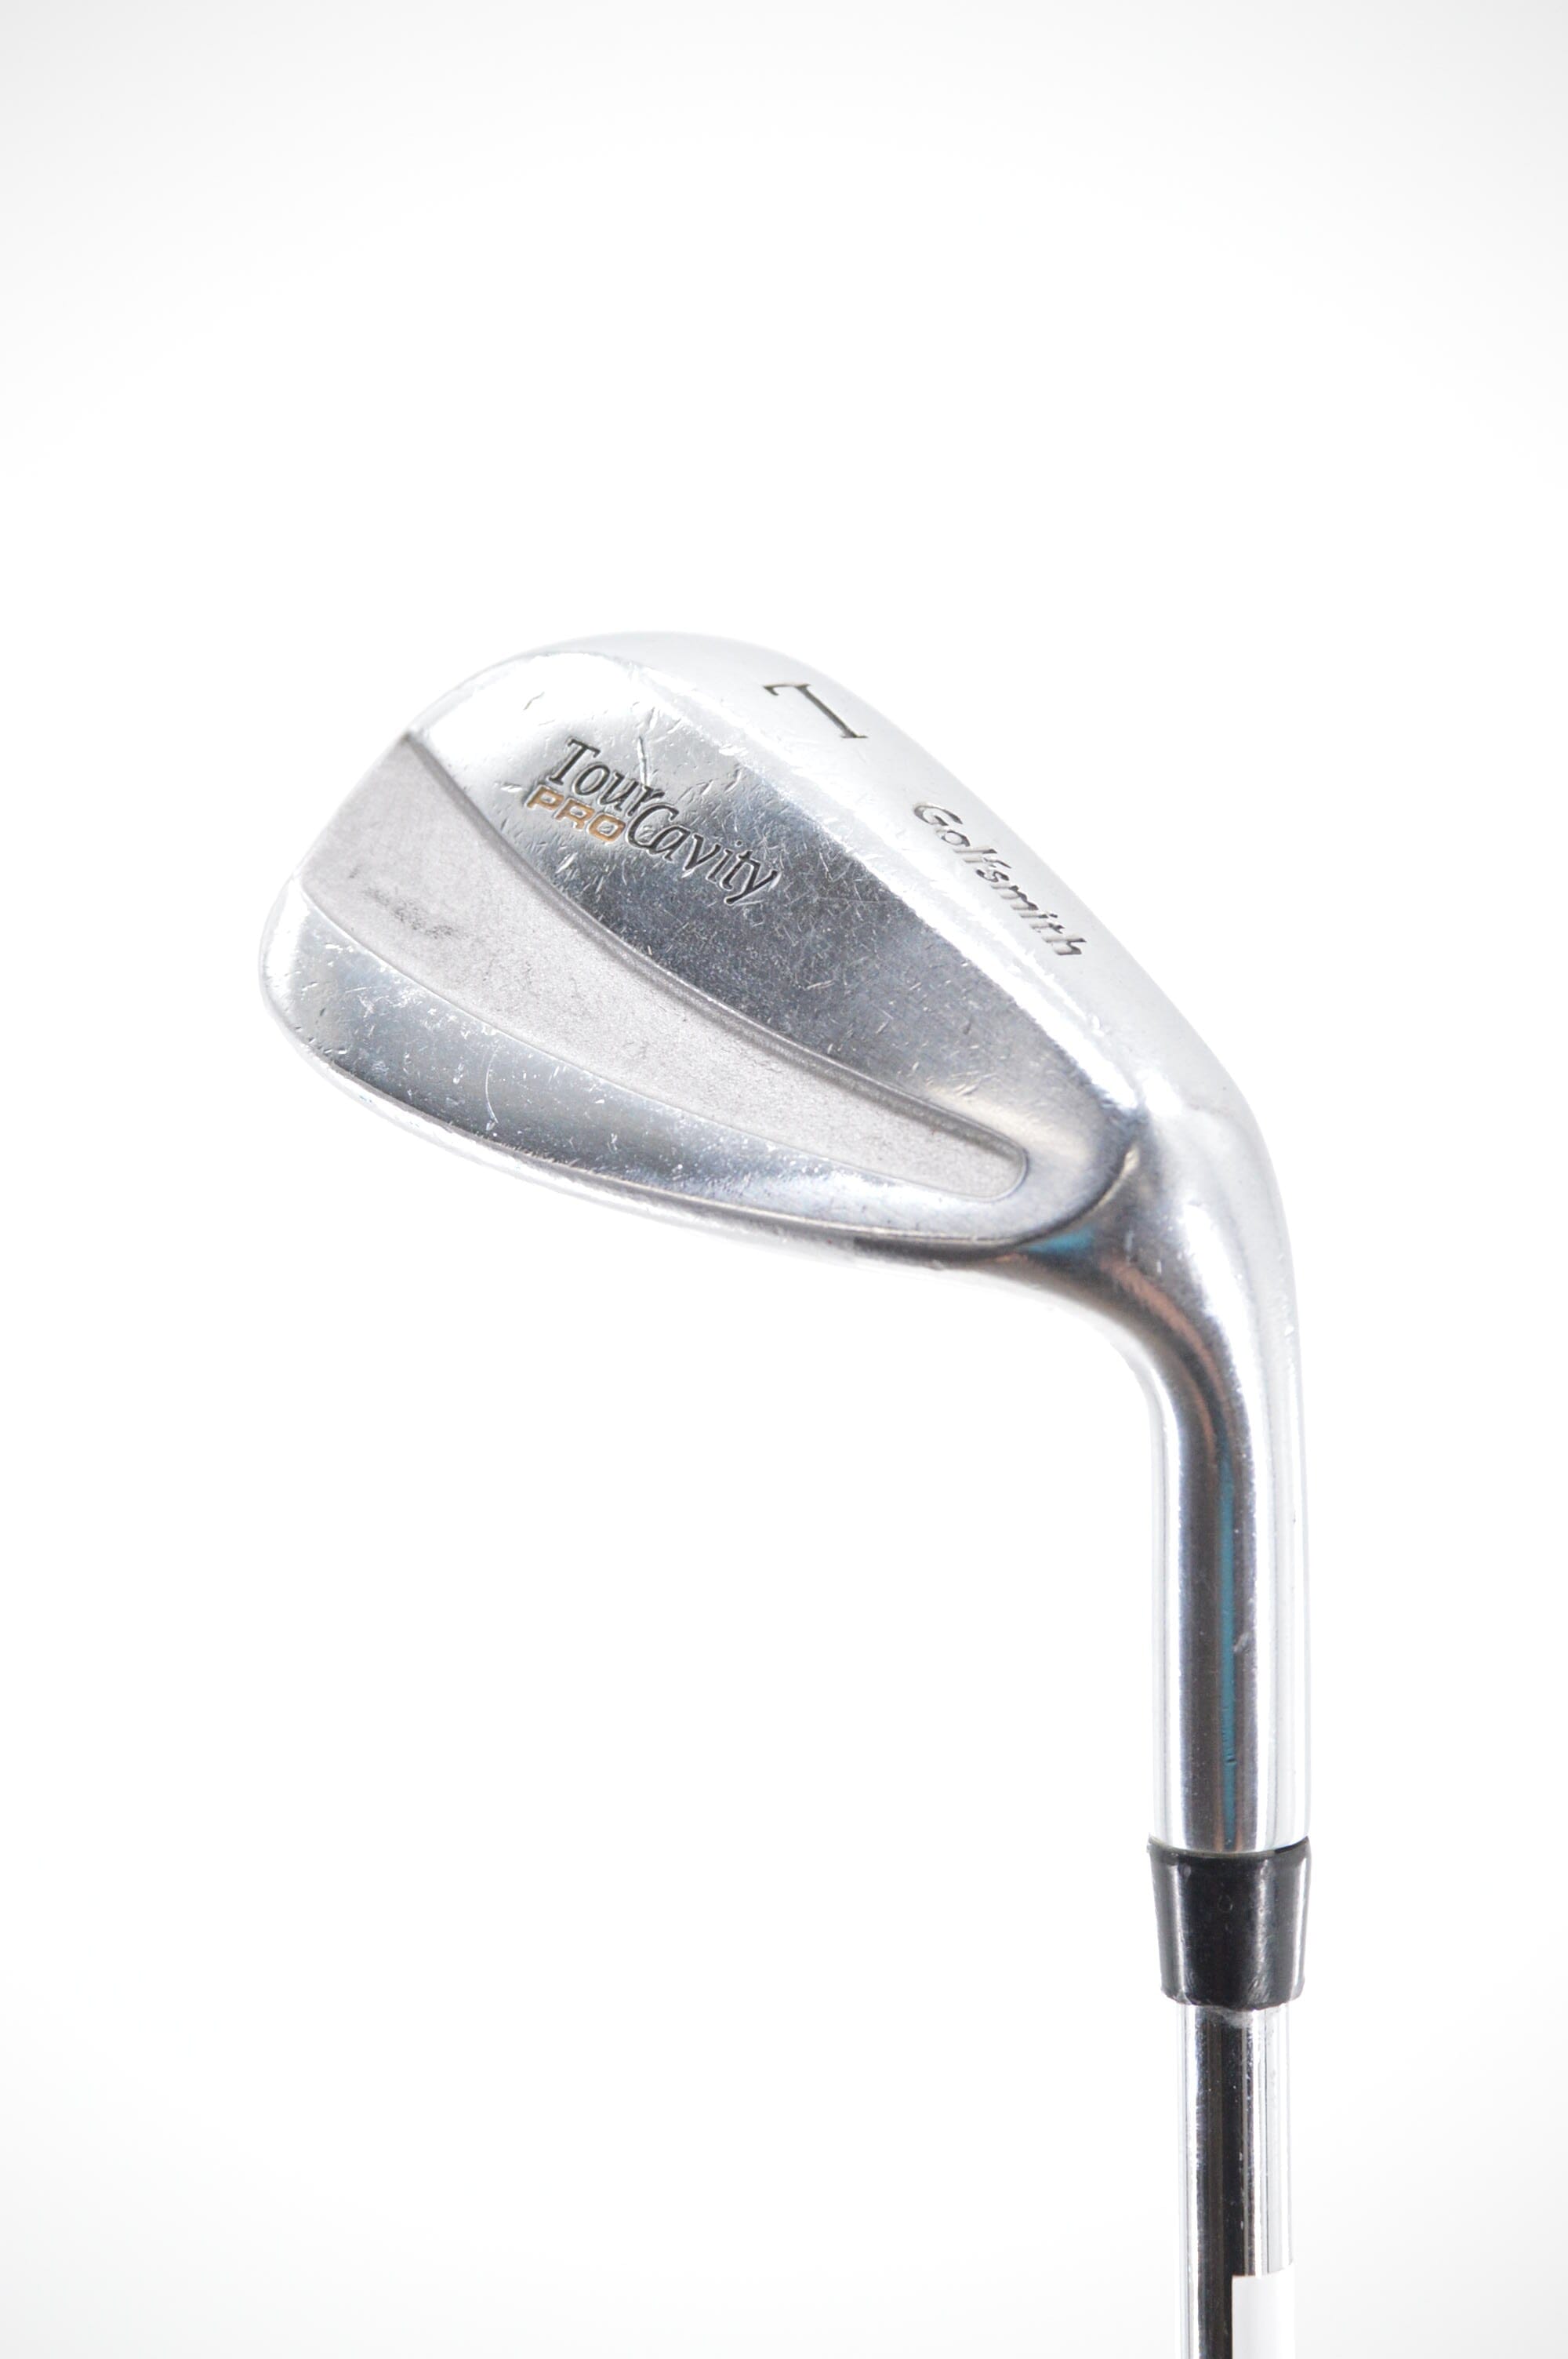 Golfsmith Tour Cavity Pro LW Iron R Flex Golf Clubs GolfRoots 